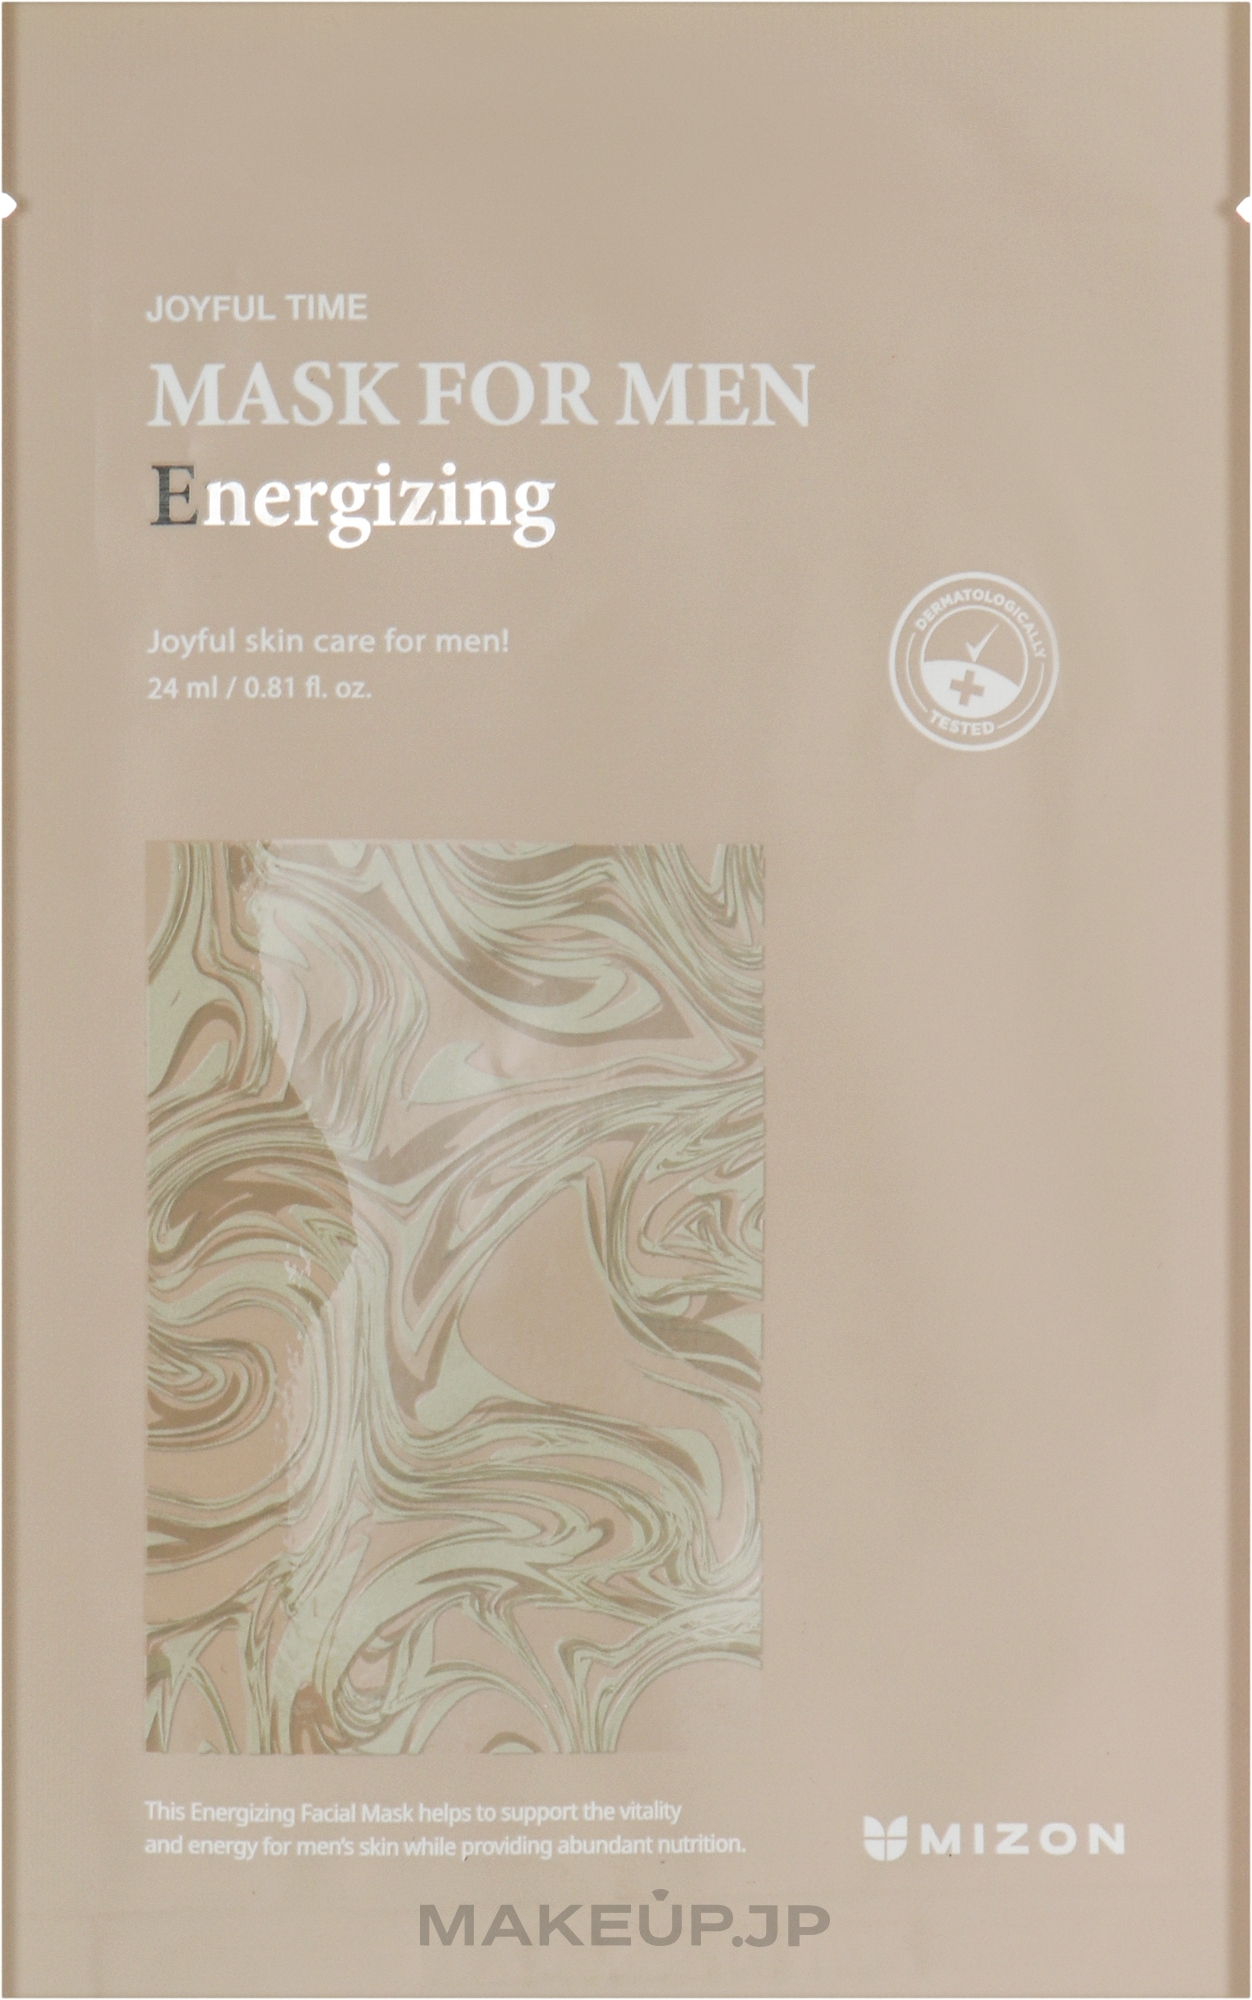 Energizing Face Mask for Men - Mizon Joyful Time Mask For Men Energizing — photo 24 ml